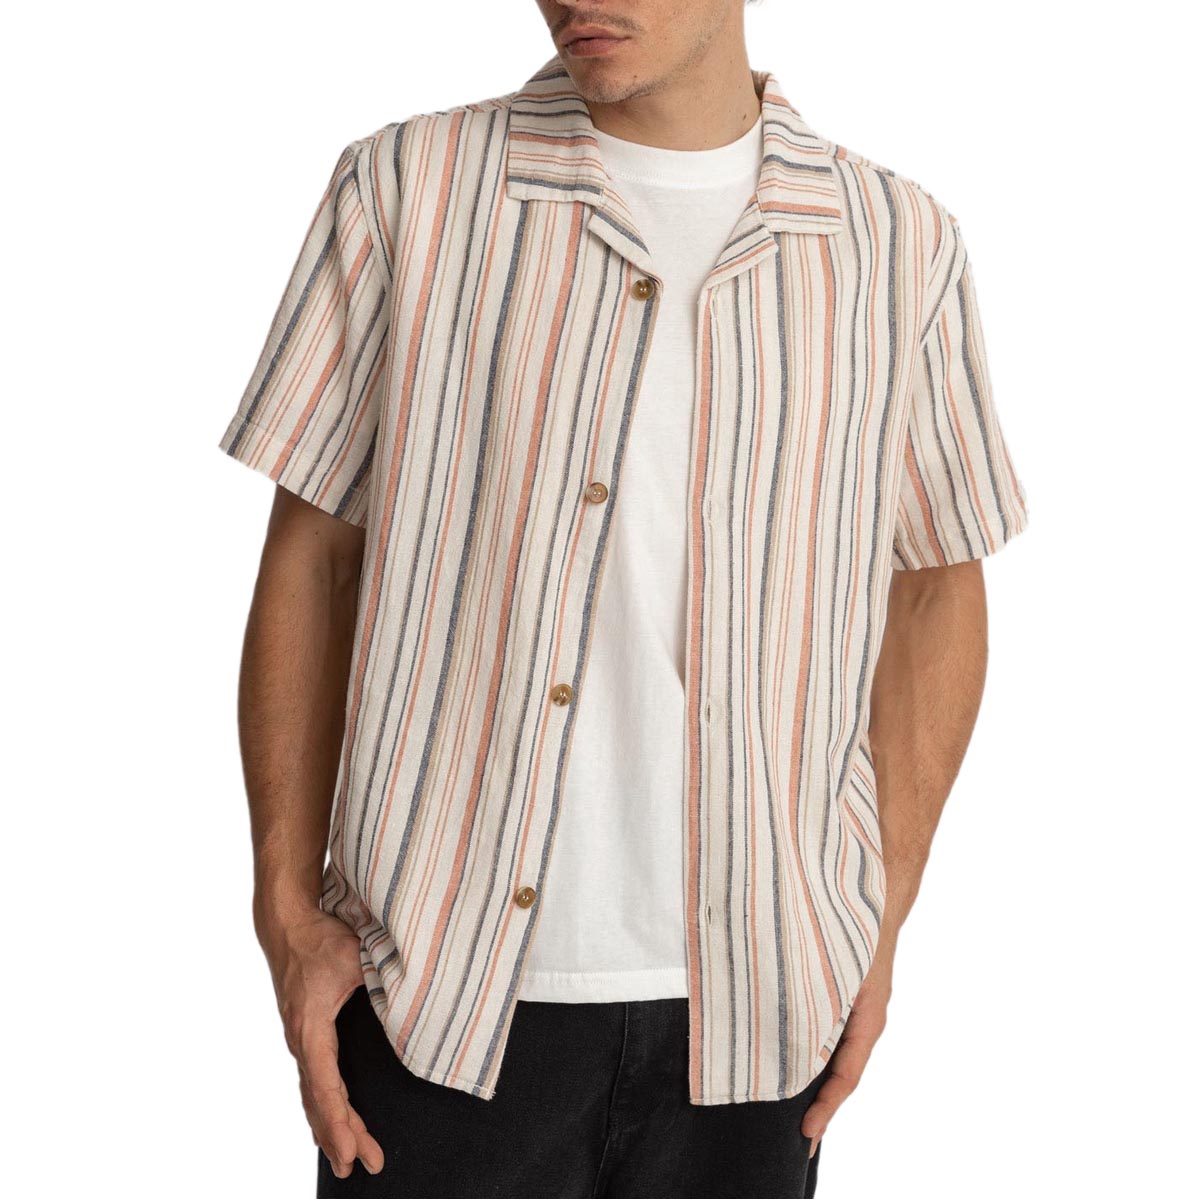 Rhythm Vacation Stripes Shirt - Natural image 1